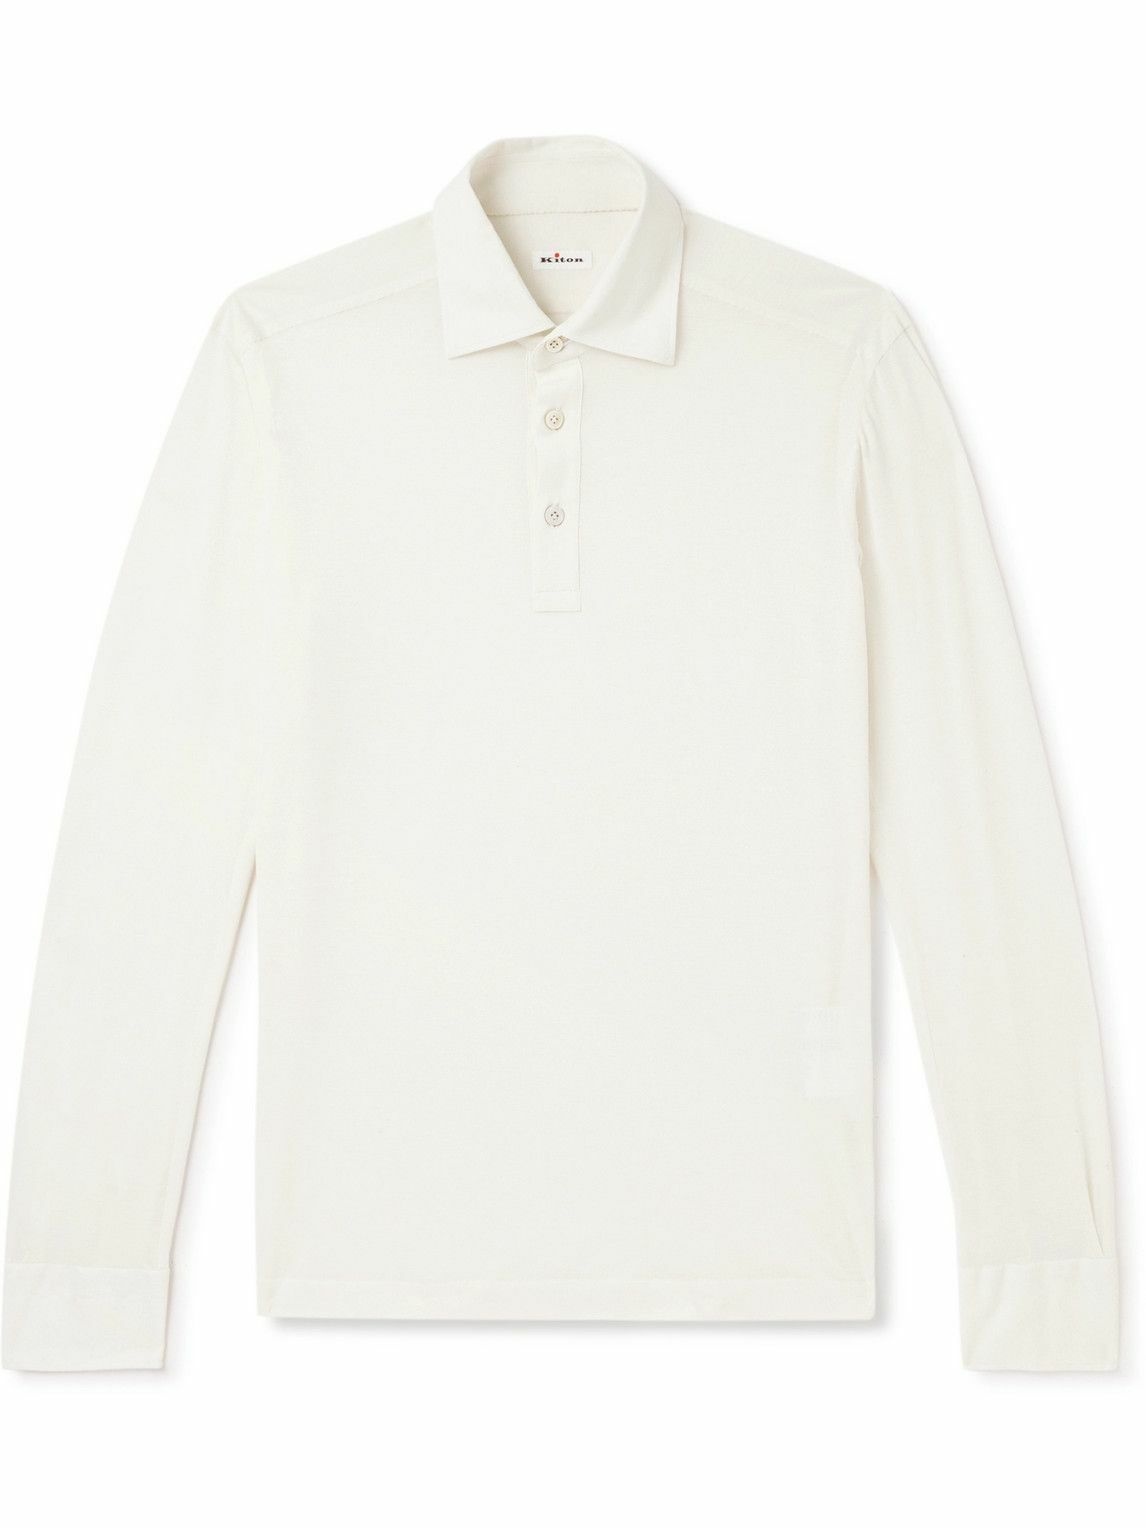 Kiton - Cotton Polo Shirt - White Kiton